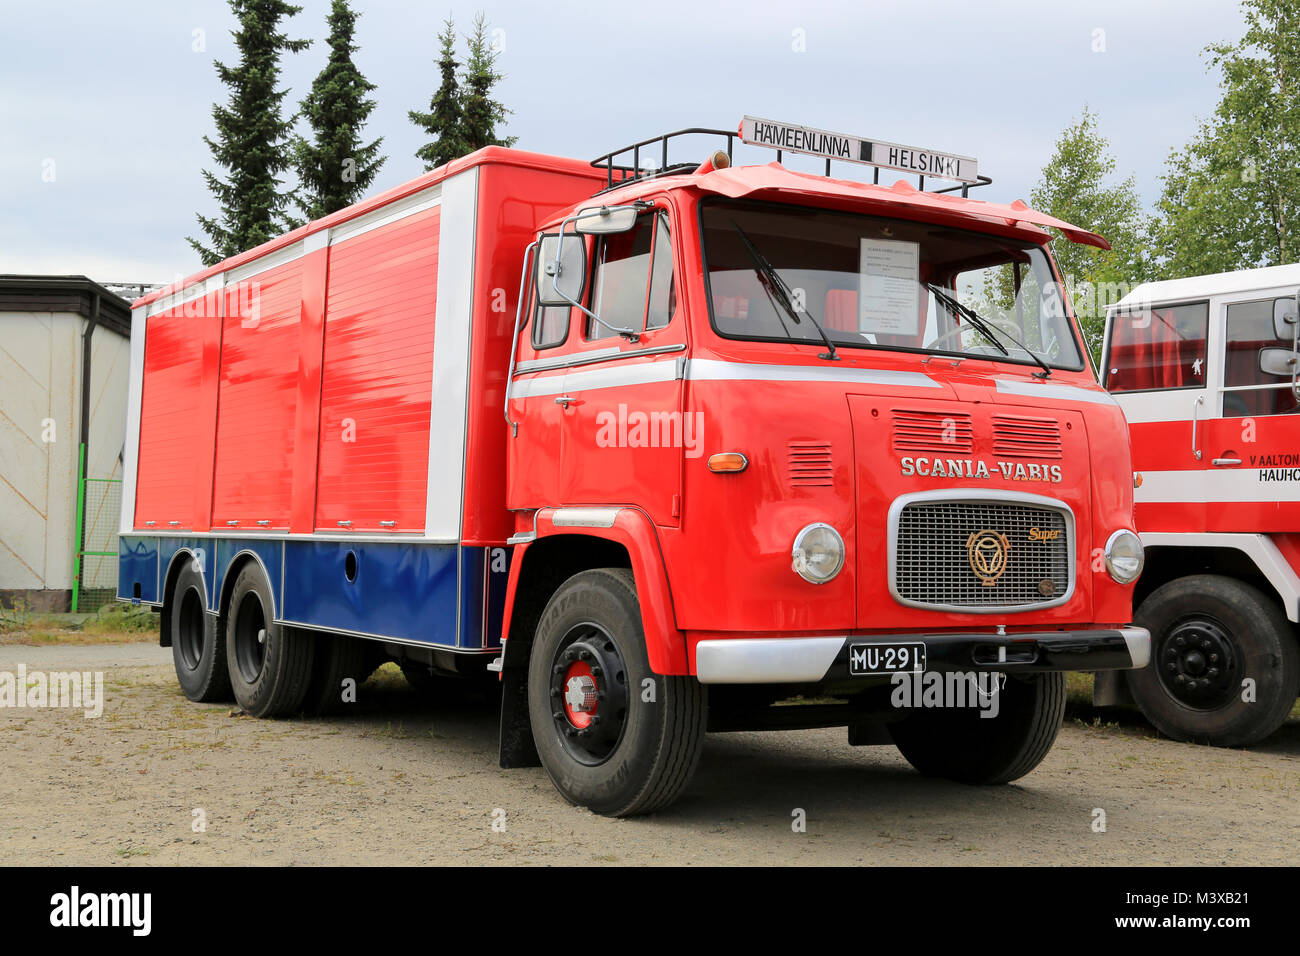 HATTULA, Finlandia - Julio 12, 2014: Classic Scania Vabis LB76 semirremolque Camión año 1967 para el transporte de refresco de pantalla en camión Tawastia wee Foto de stock